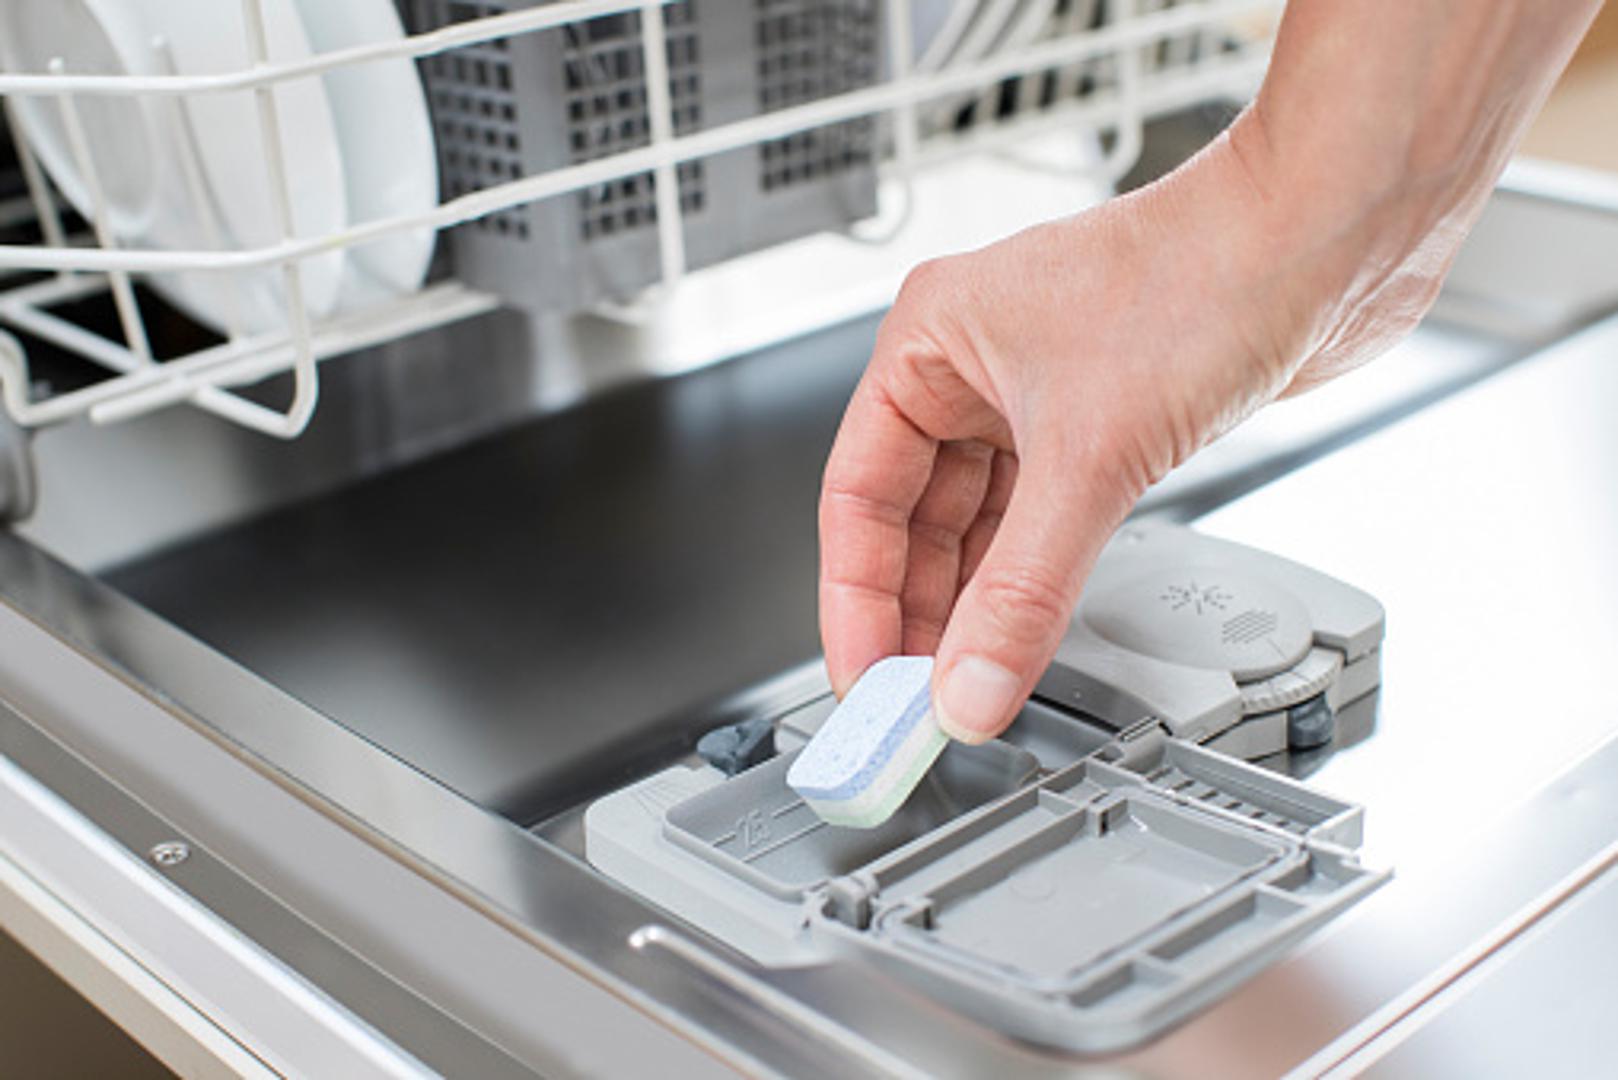 Stručnjaci kažu kako noževima mogu naštetiti sastojci za otapanje masnoća koji se nalaze u tabletama za pranje posuđa. 